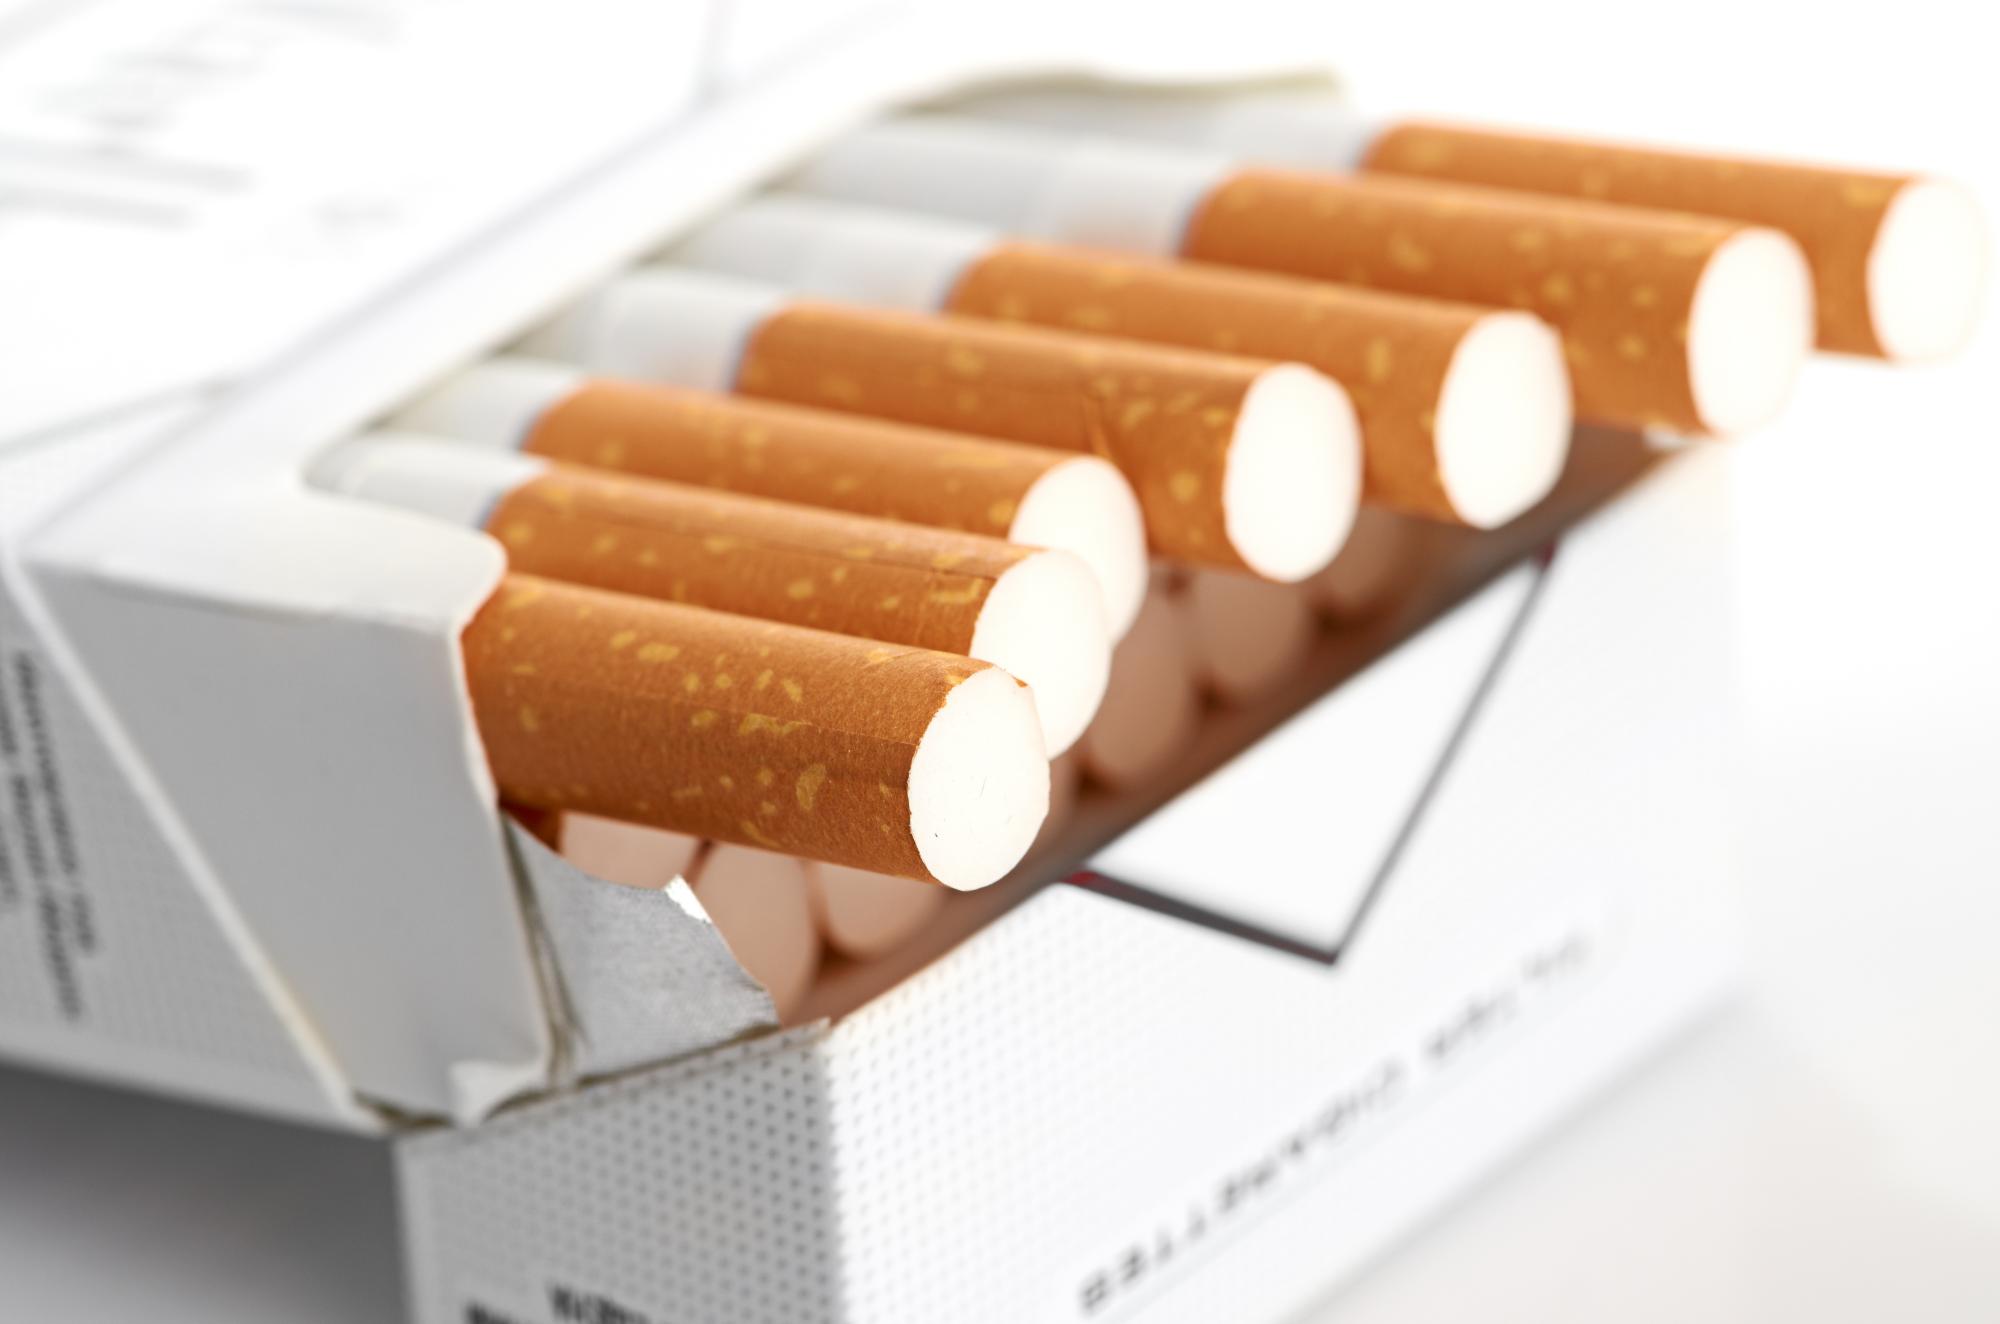 Новые устрашающие картинки на пачках сигарет отсрочат гармонизацию техрегламента ТС